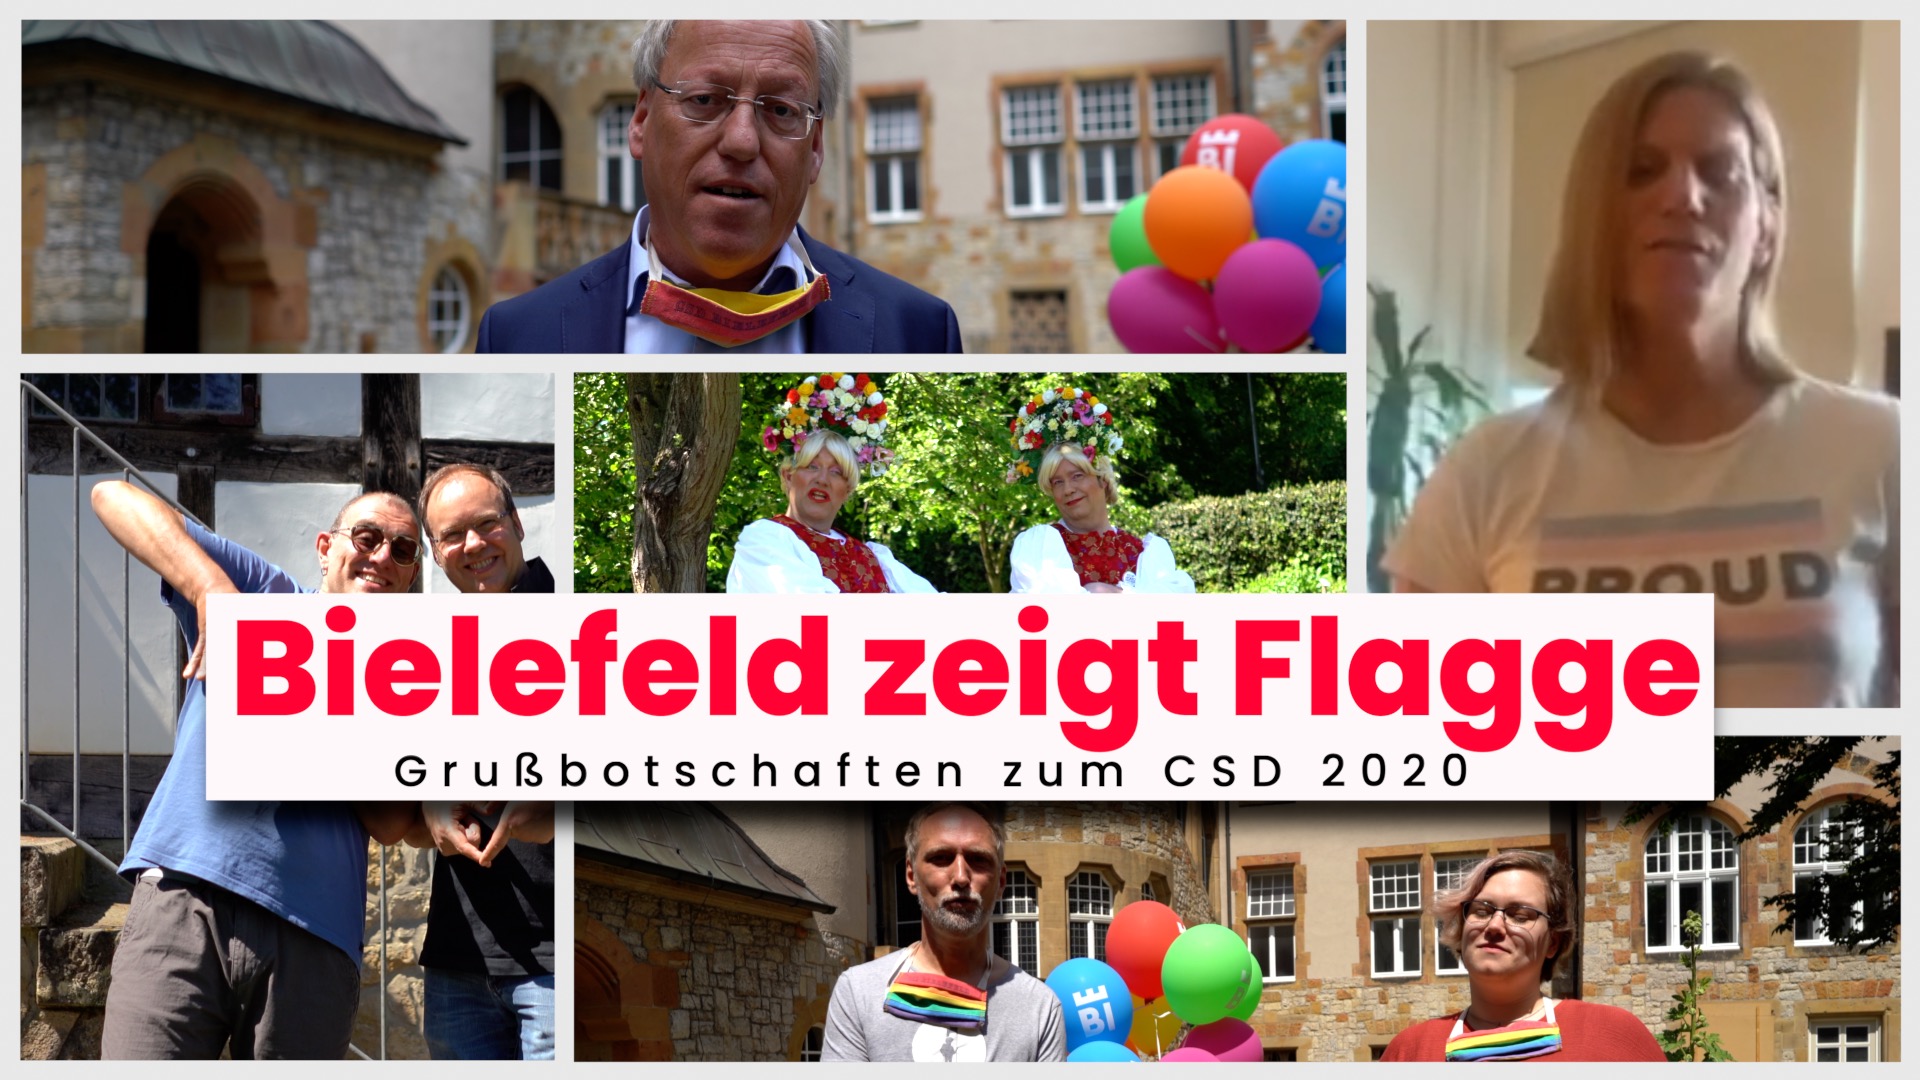 Bielefeld zeigt Flagge - Musikvideo und Reportage